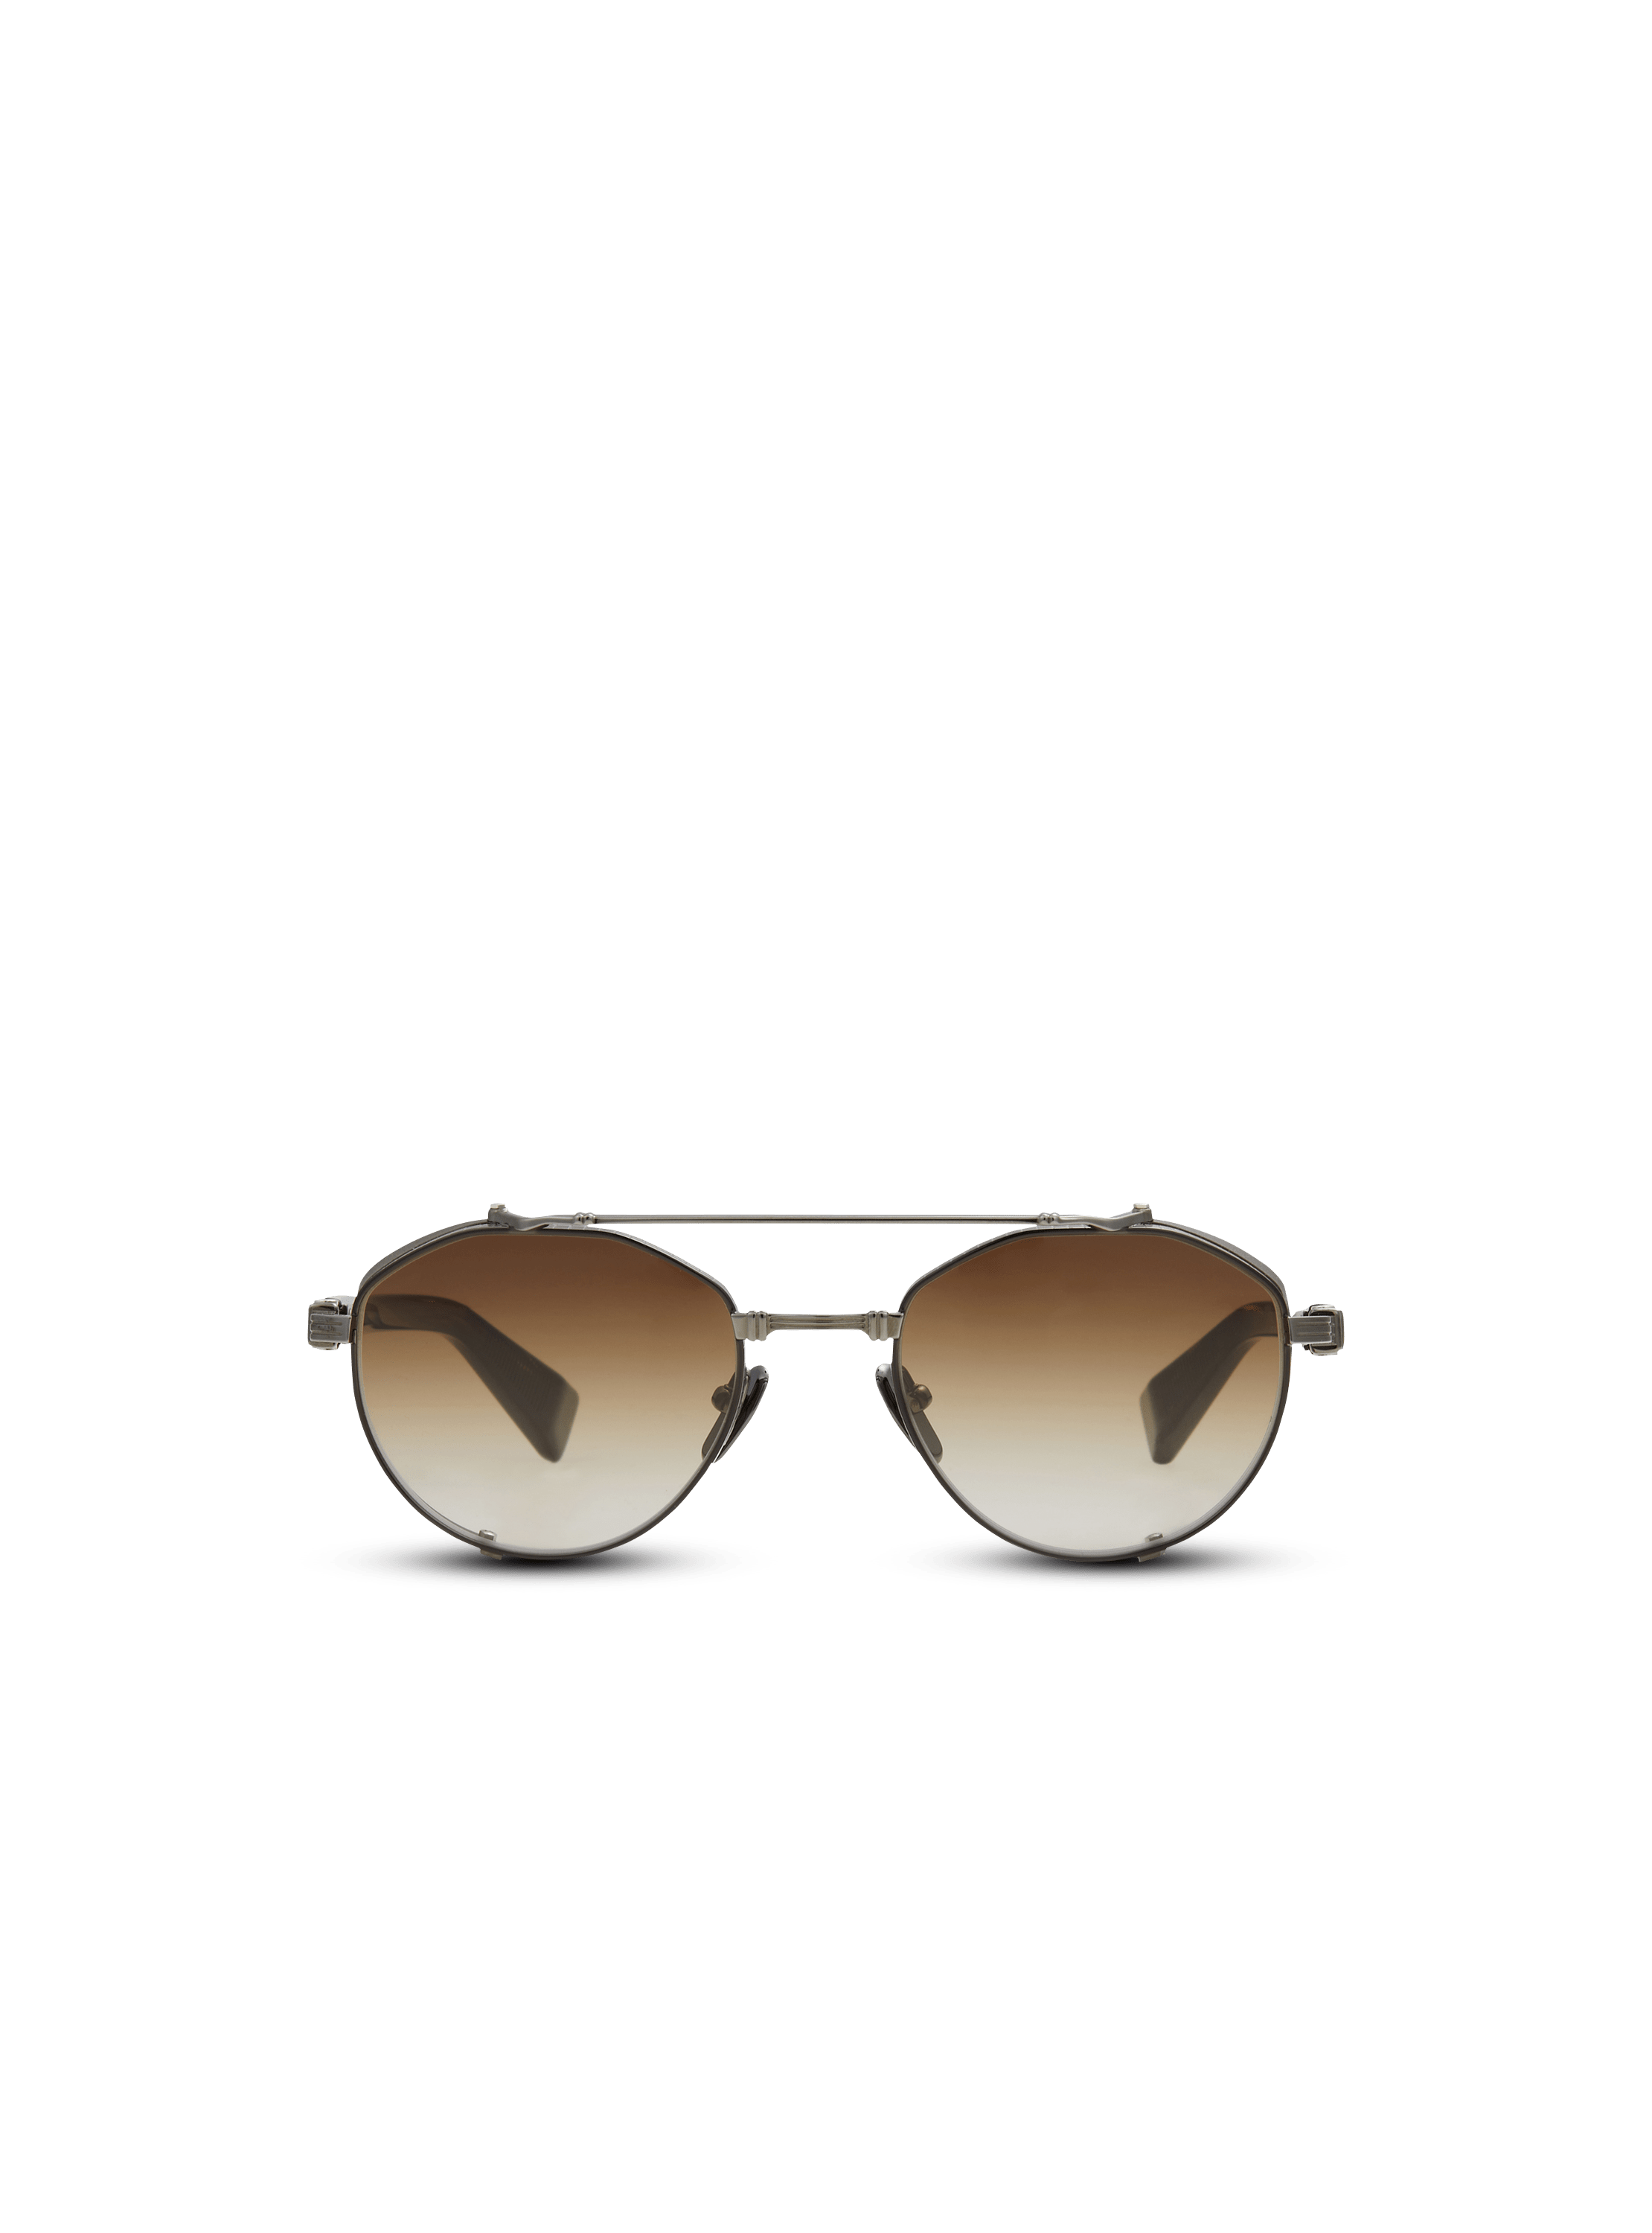 Brigade IV sunglasses